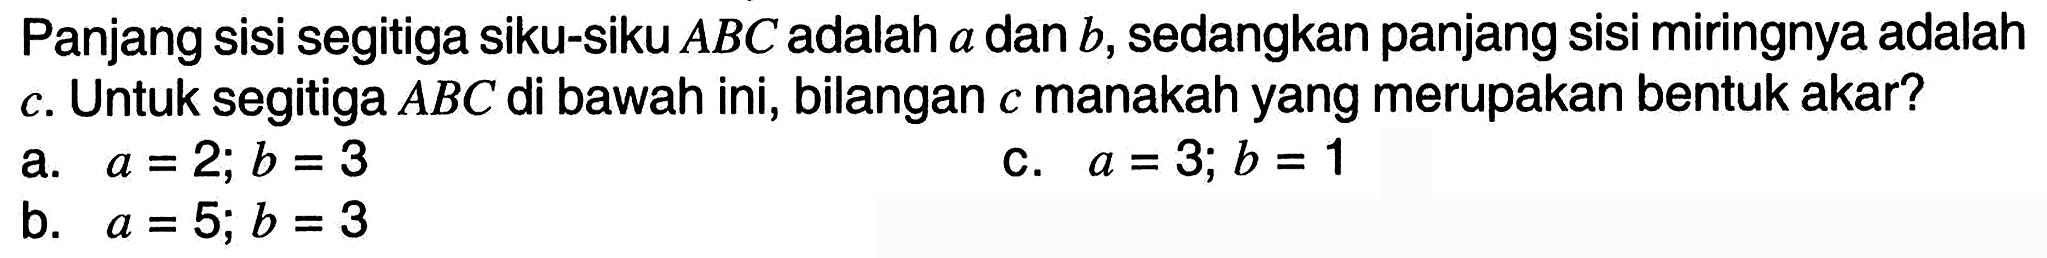 Panjang sisi segitiga siku-siku  A B C  adalah  a  dan  b , sedangkan panjang sisi miringnya adalah c. Untuk segitiga  A B C  di bawah ini, bilangan  c  manakah yang merupakan bentuk akar?
a.  a=2 ; b=3 
c.  a=3 ; b=1 
b.  a=5 ; b=3 